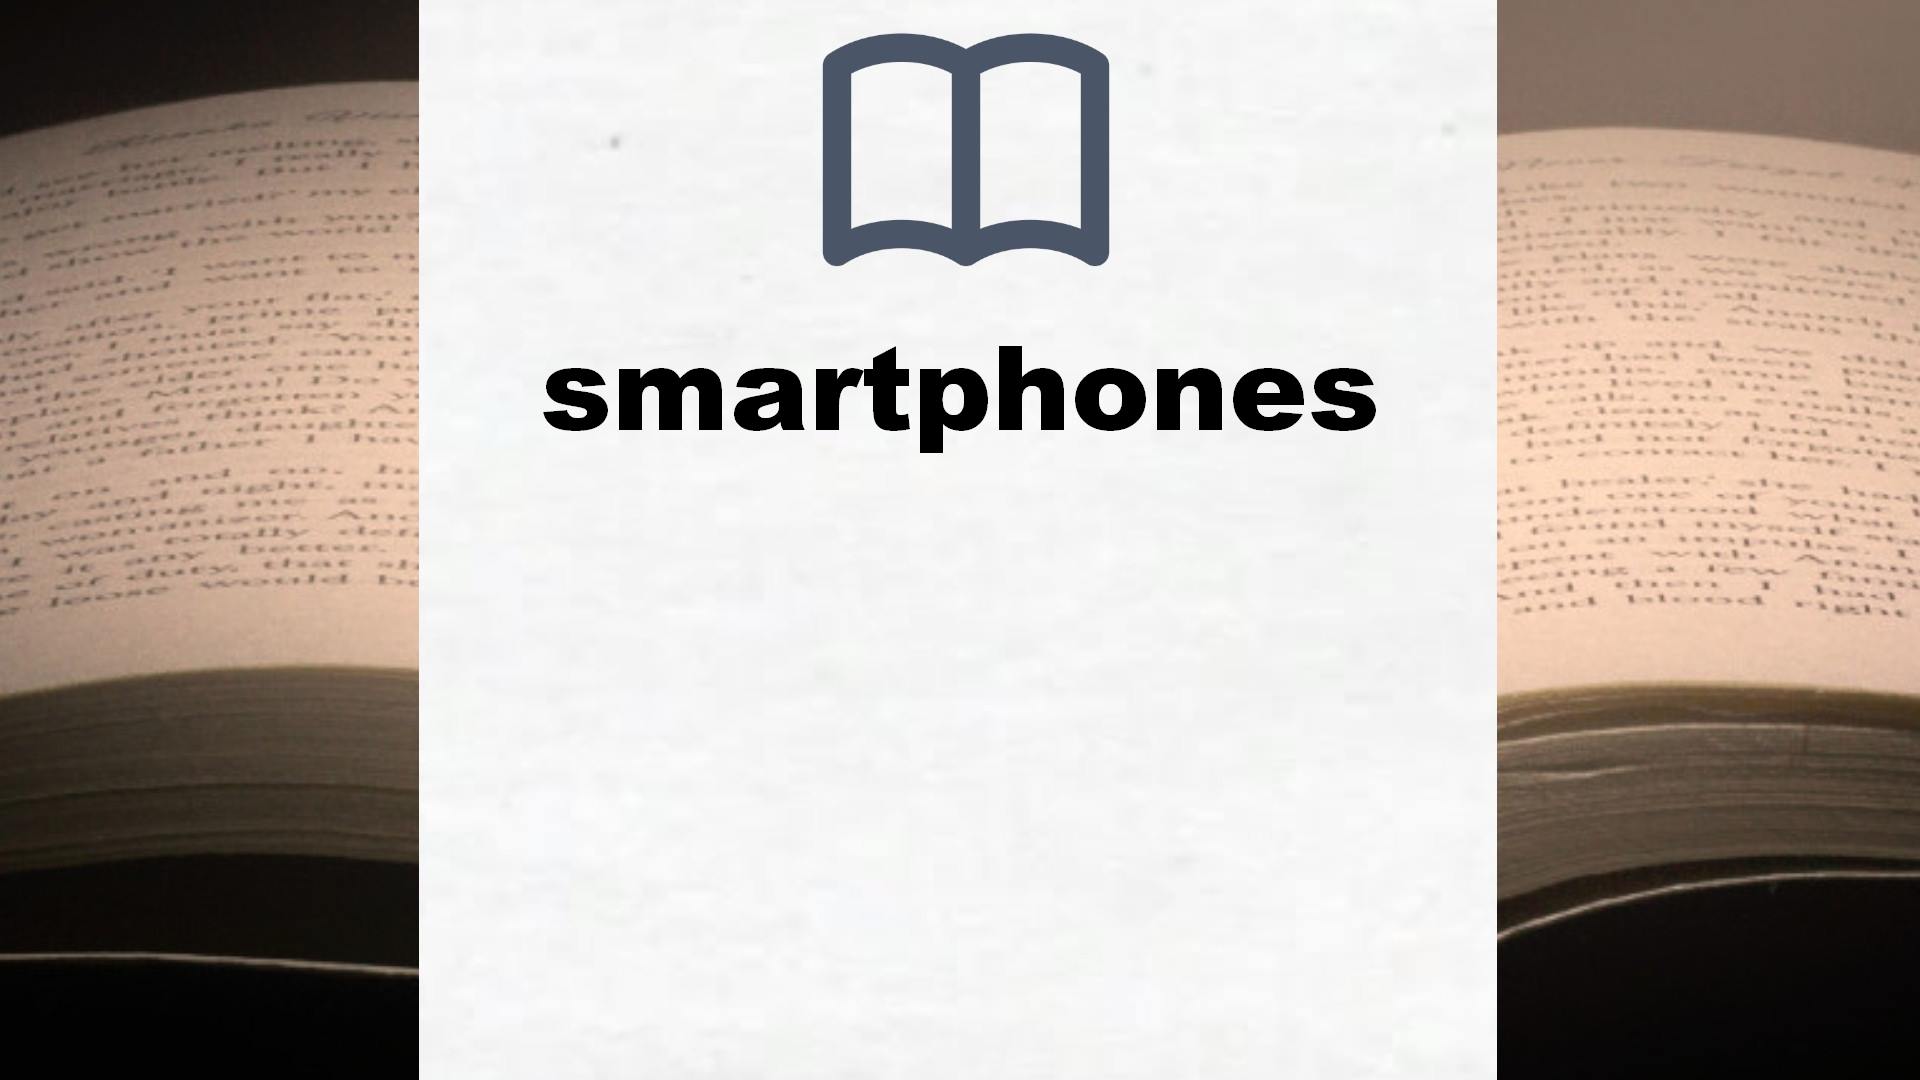 Libros sobre smartphones